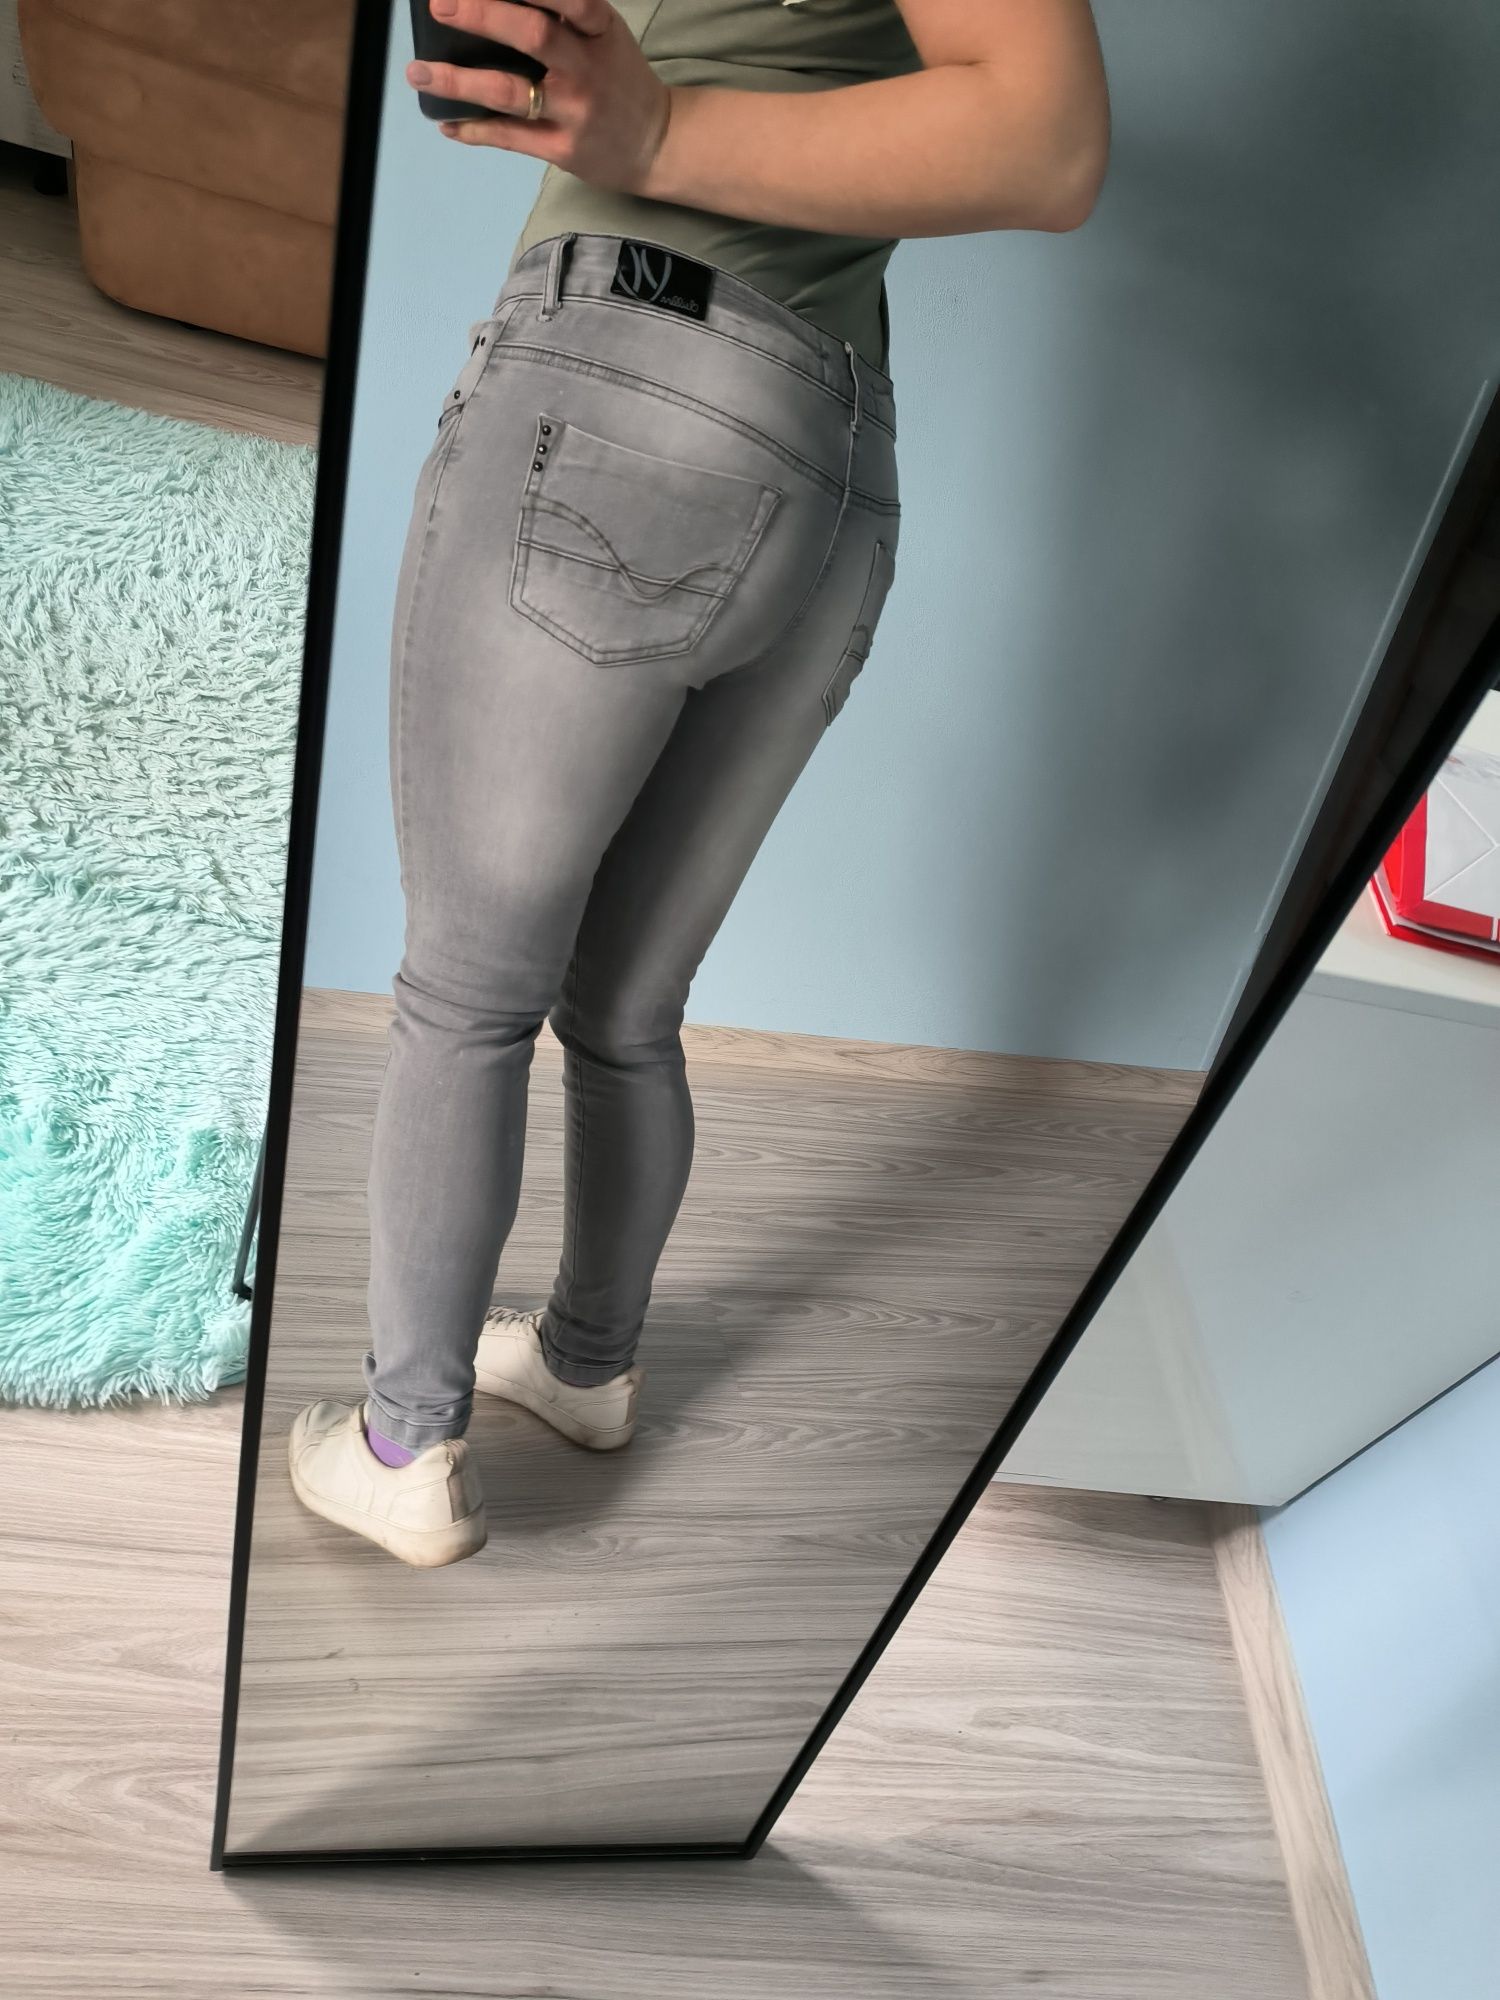 Spodnie jeansowe M 38